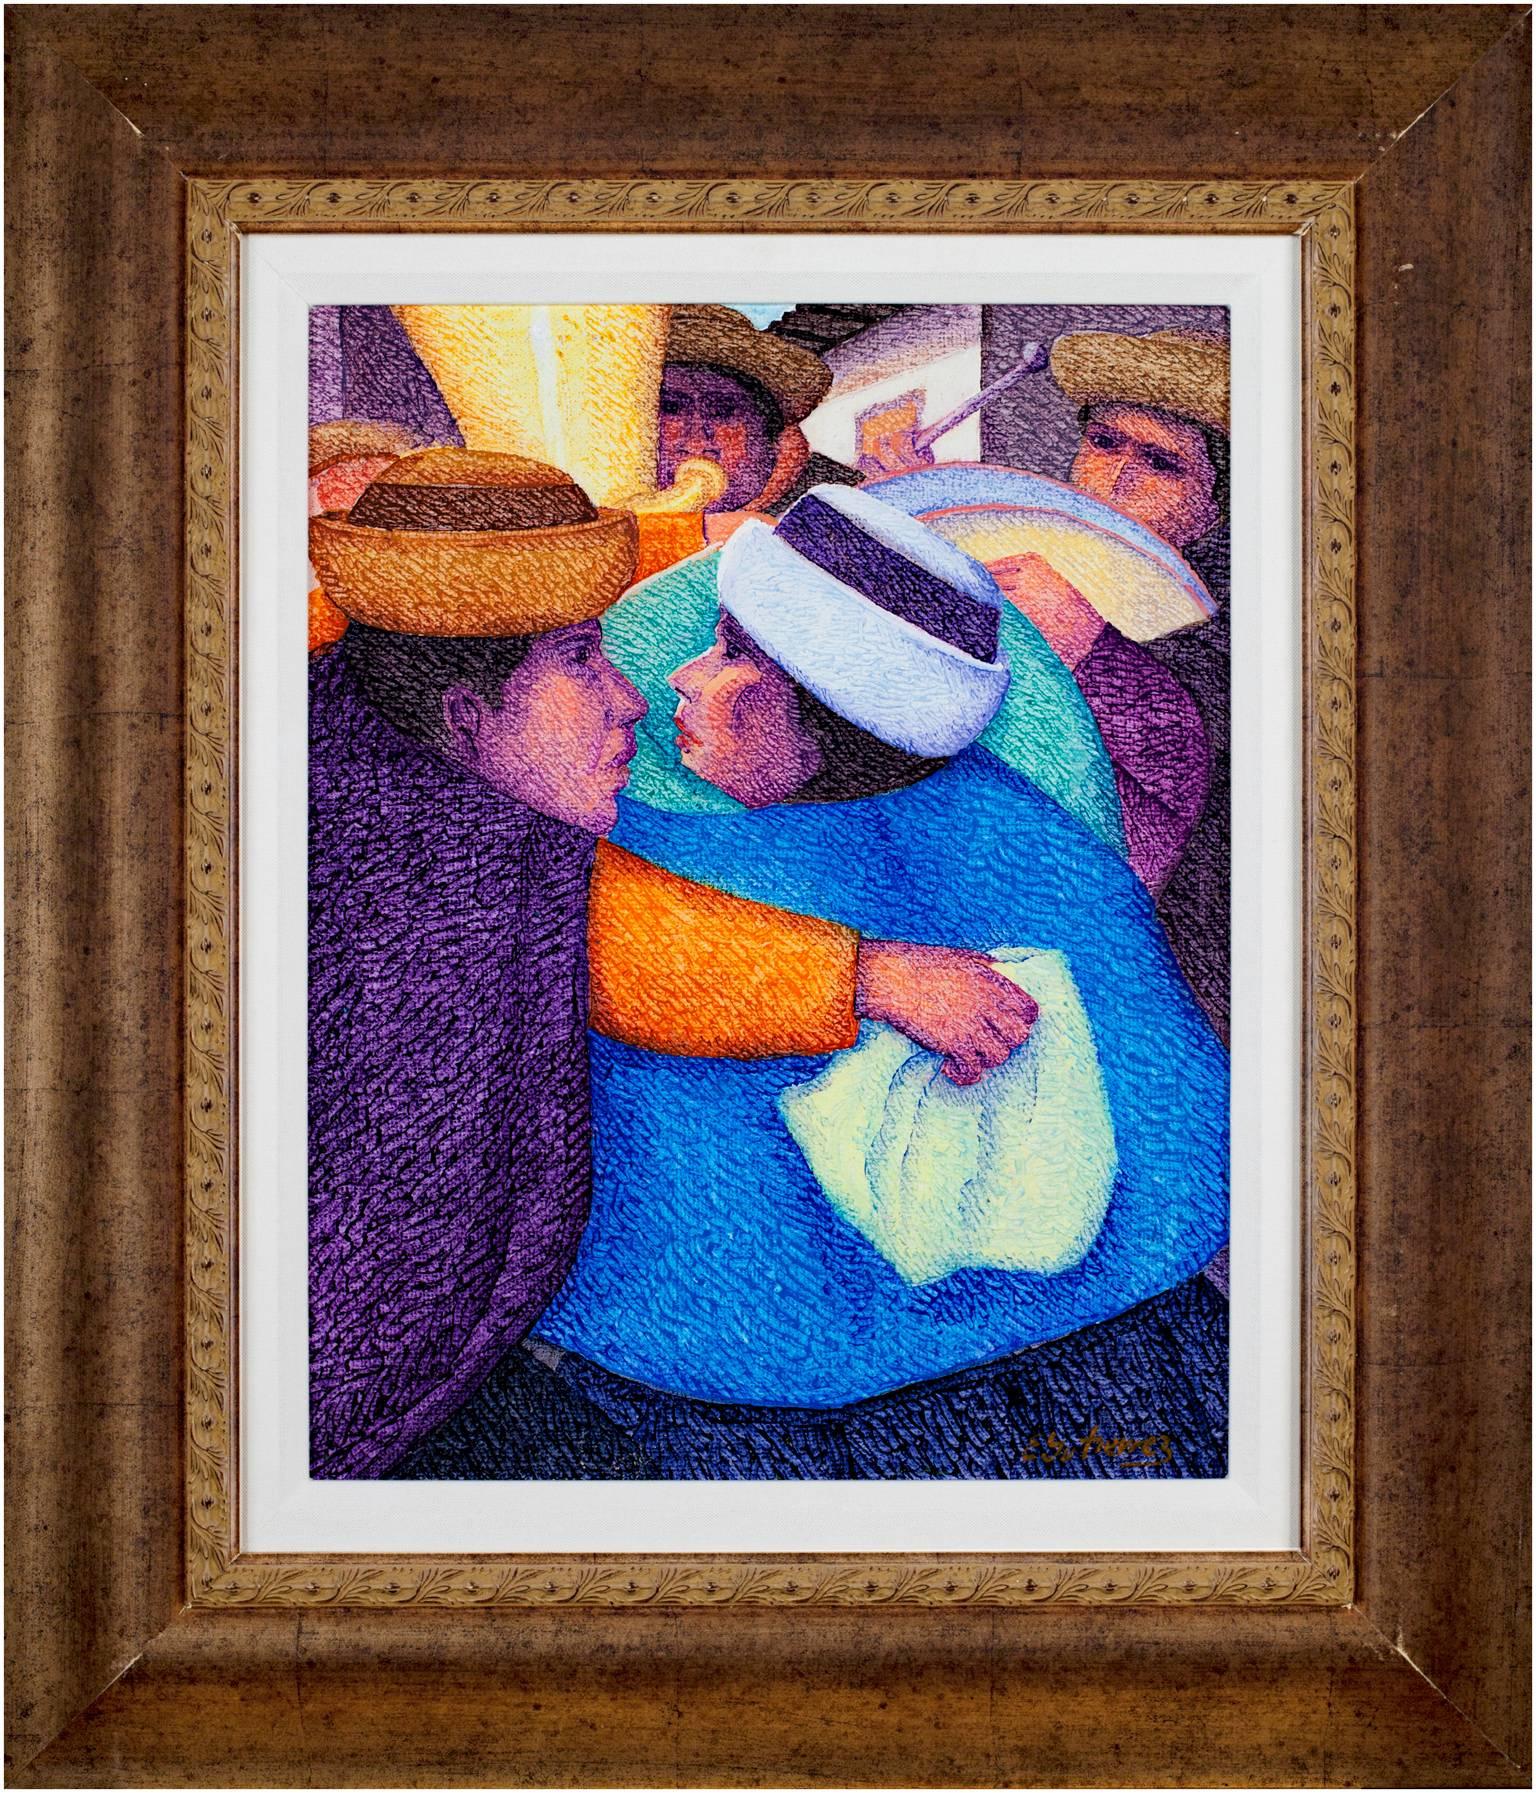 Figurative Painting Ernesto Gutierrez (b.1941) - Peinture à l'huile contemporaine figurative texturée chapeaux colorés signée.